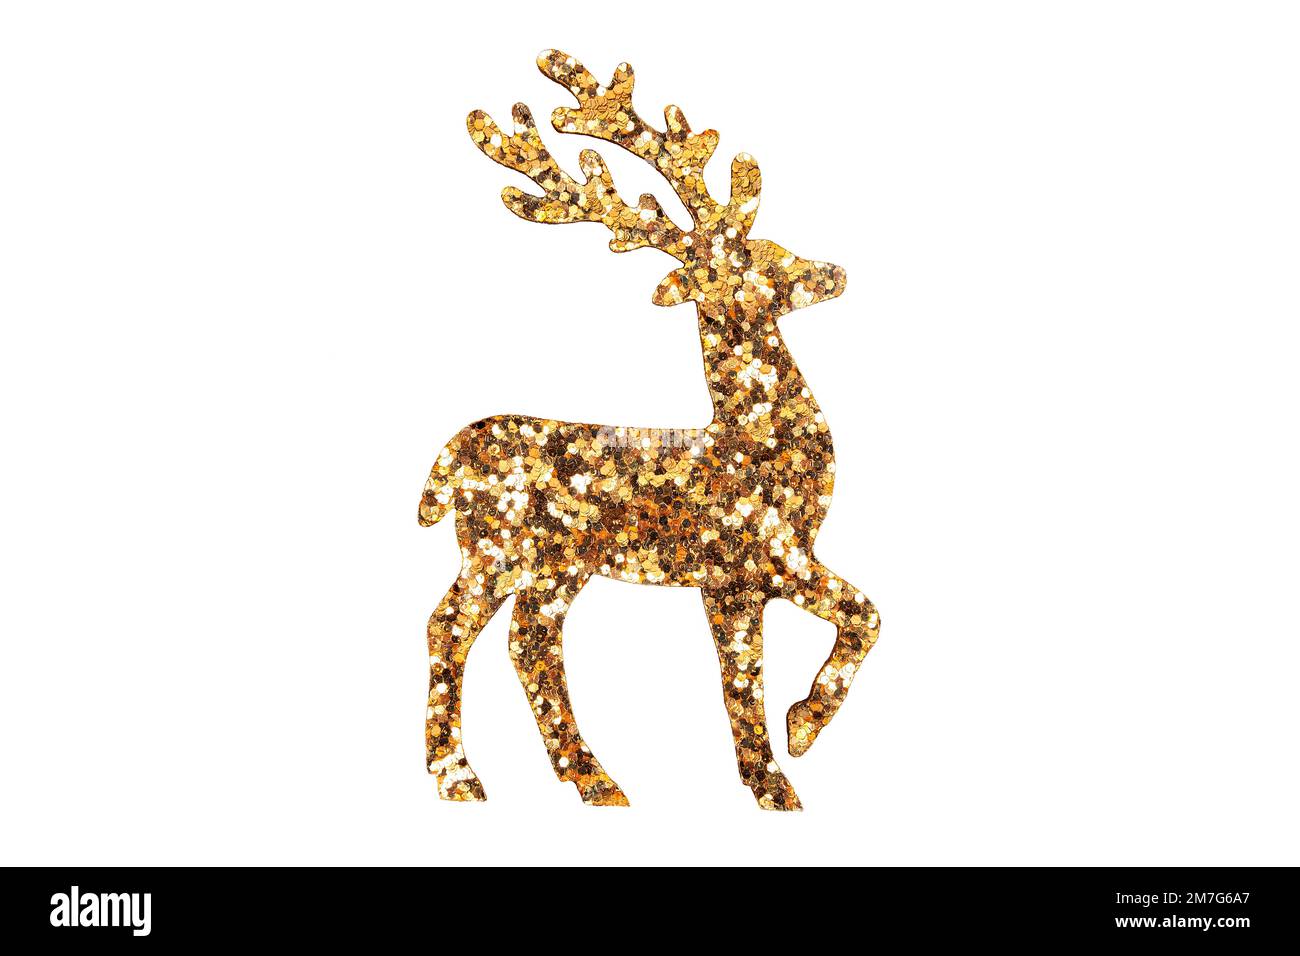 goldenes weihnachtsrentier isoliert auf weißem Hintergrund Stockfoto